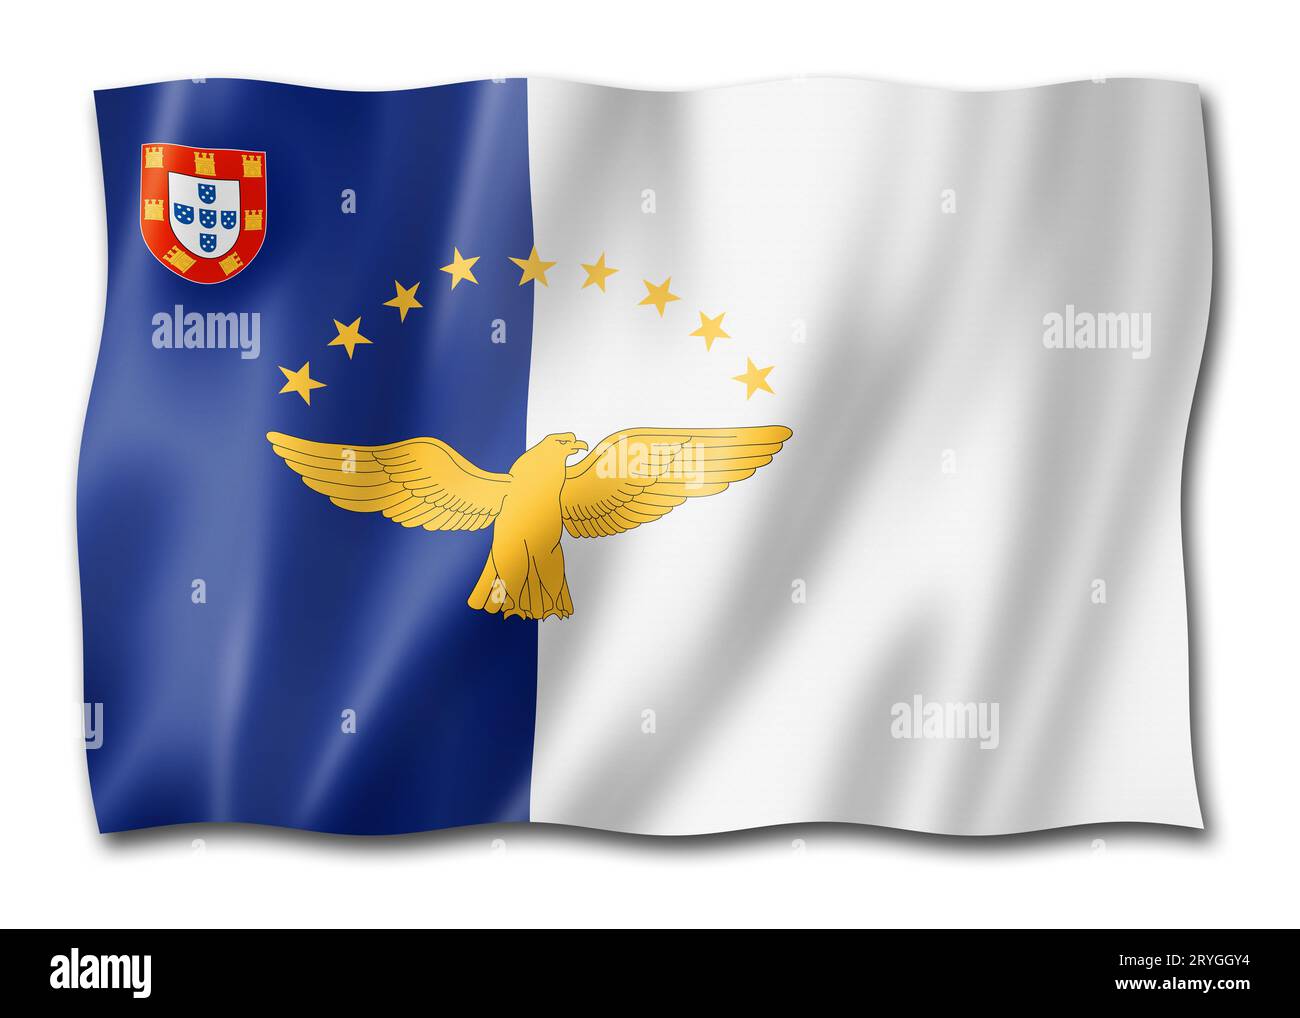 Azores archipelago flag, Portugal Stock Photo